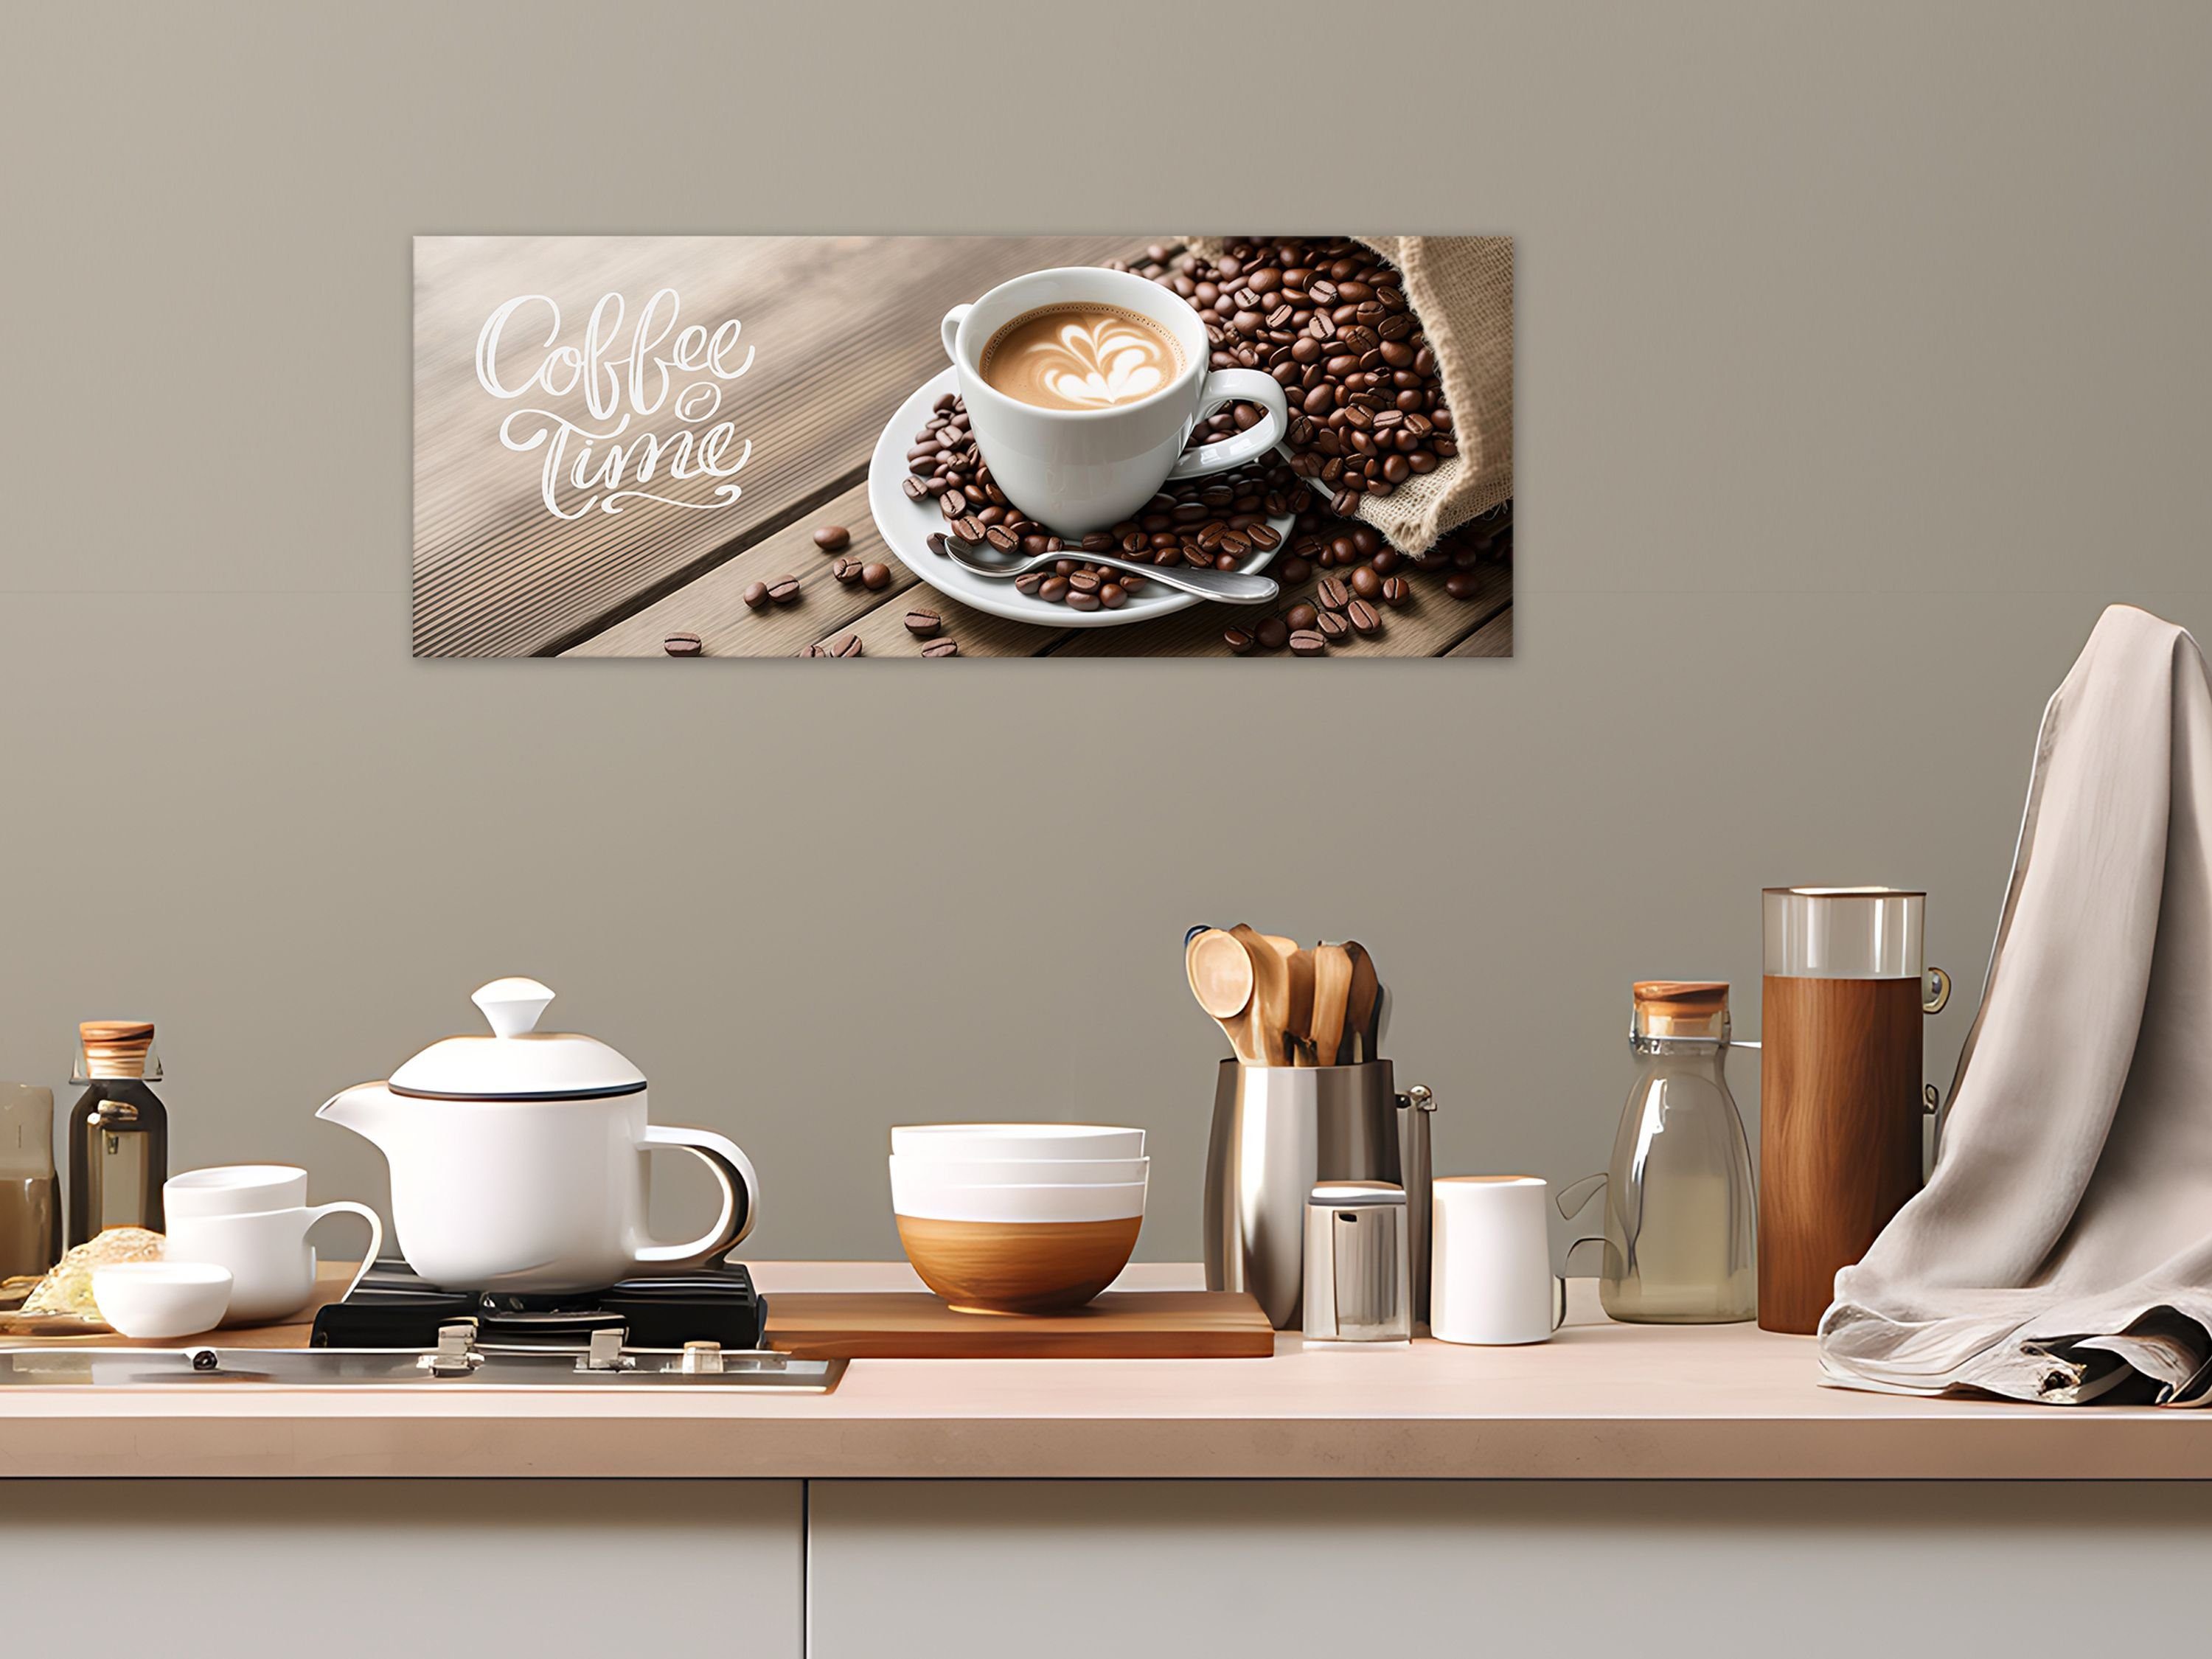 Essen Cafe Glasbild Glasbild und Trinken: 80x30cm Bild Kaffeetasse Kaffebohnen Küchenbild artissimo Küche braun, Glas / Kaffee aus